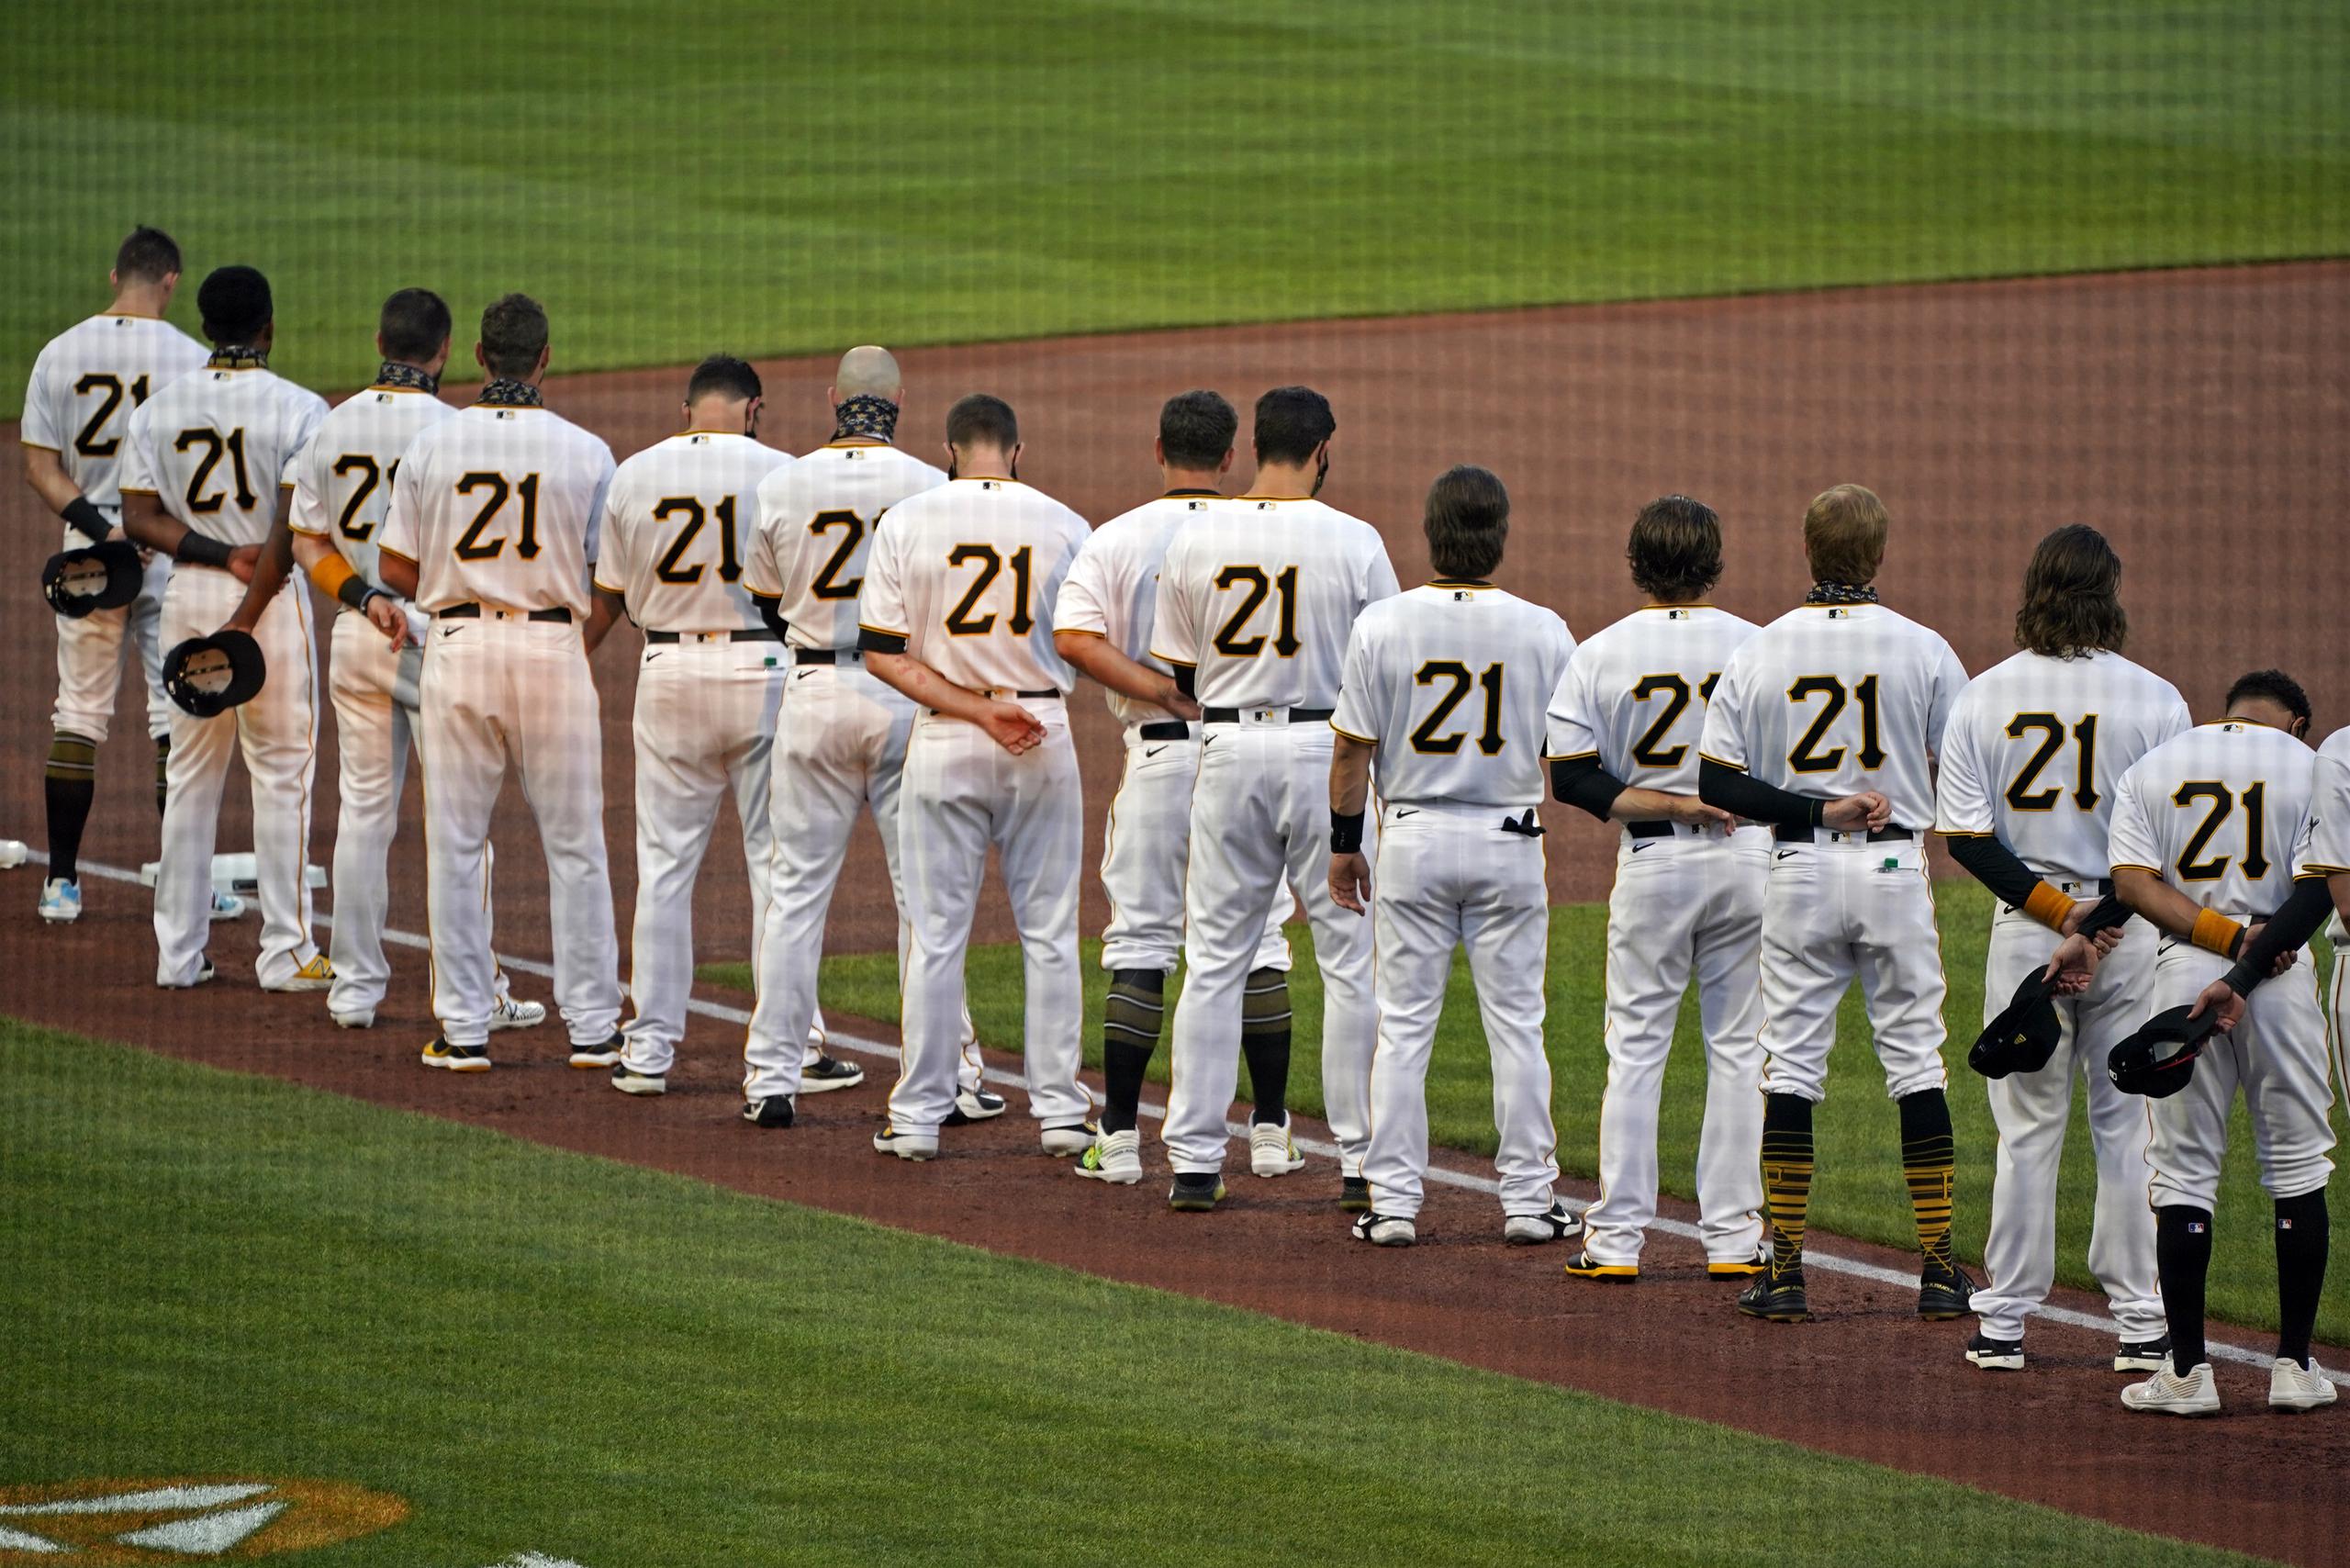 Todos los integrantes de los Pirates lucen el número 21 en sus espaldas.